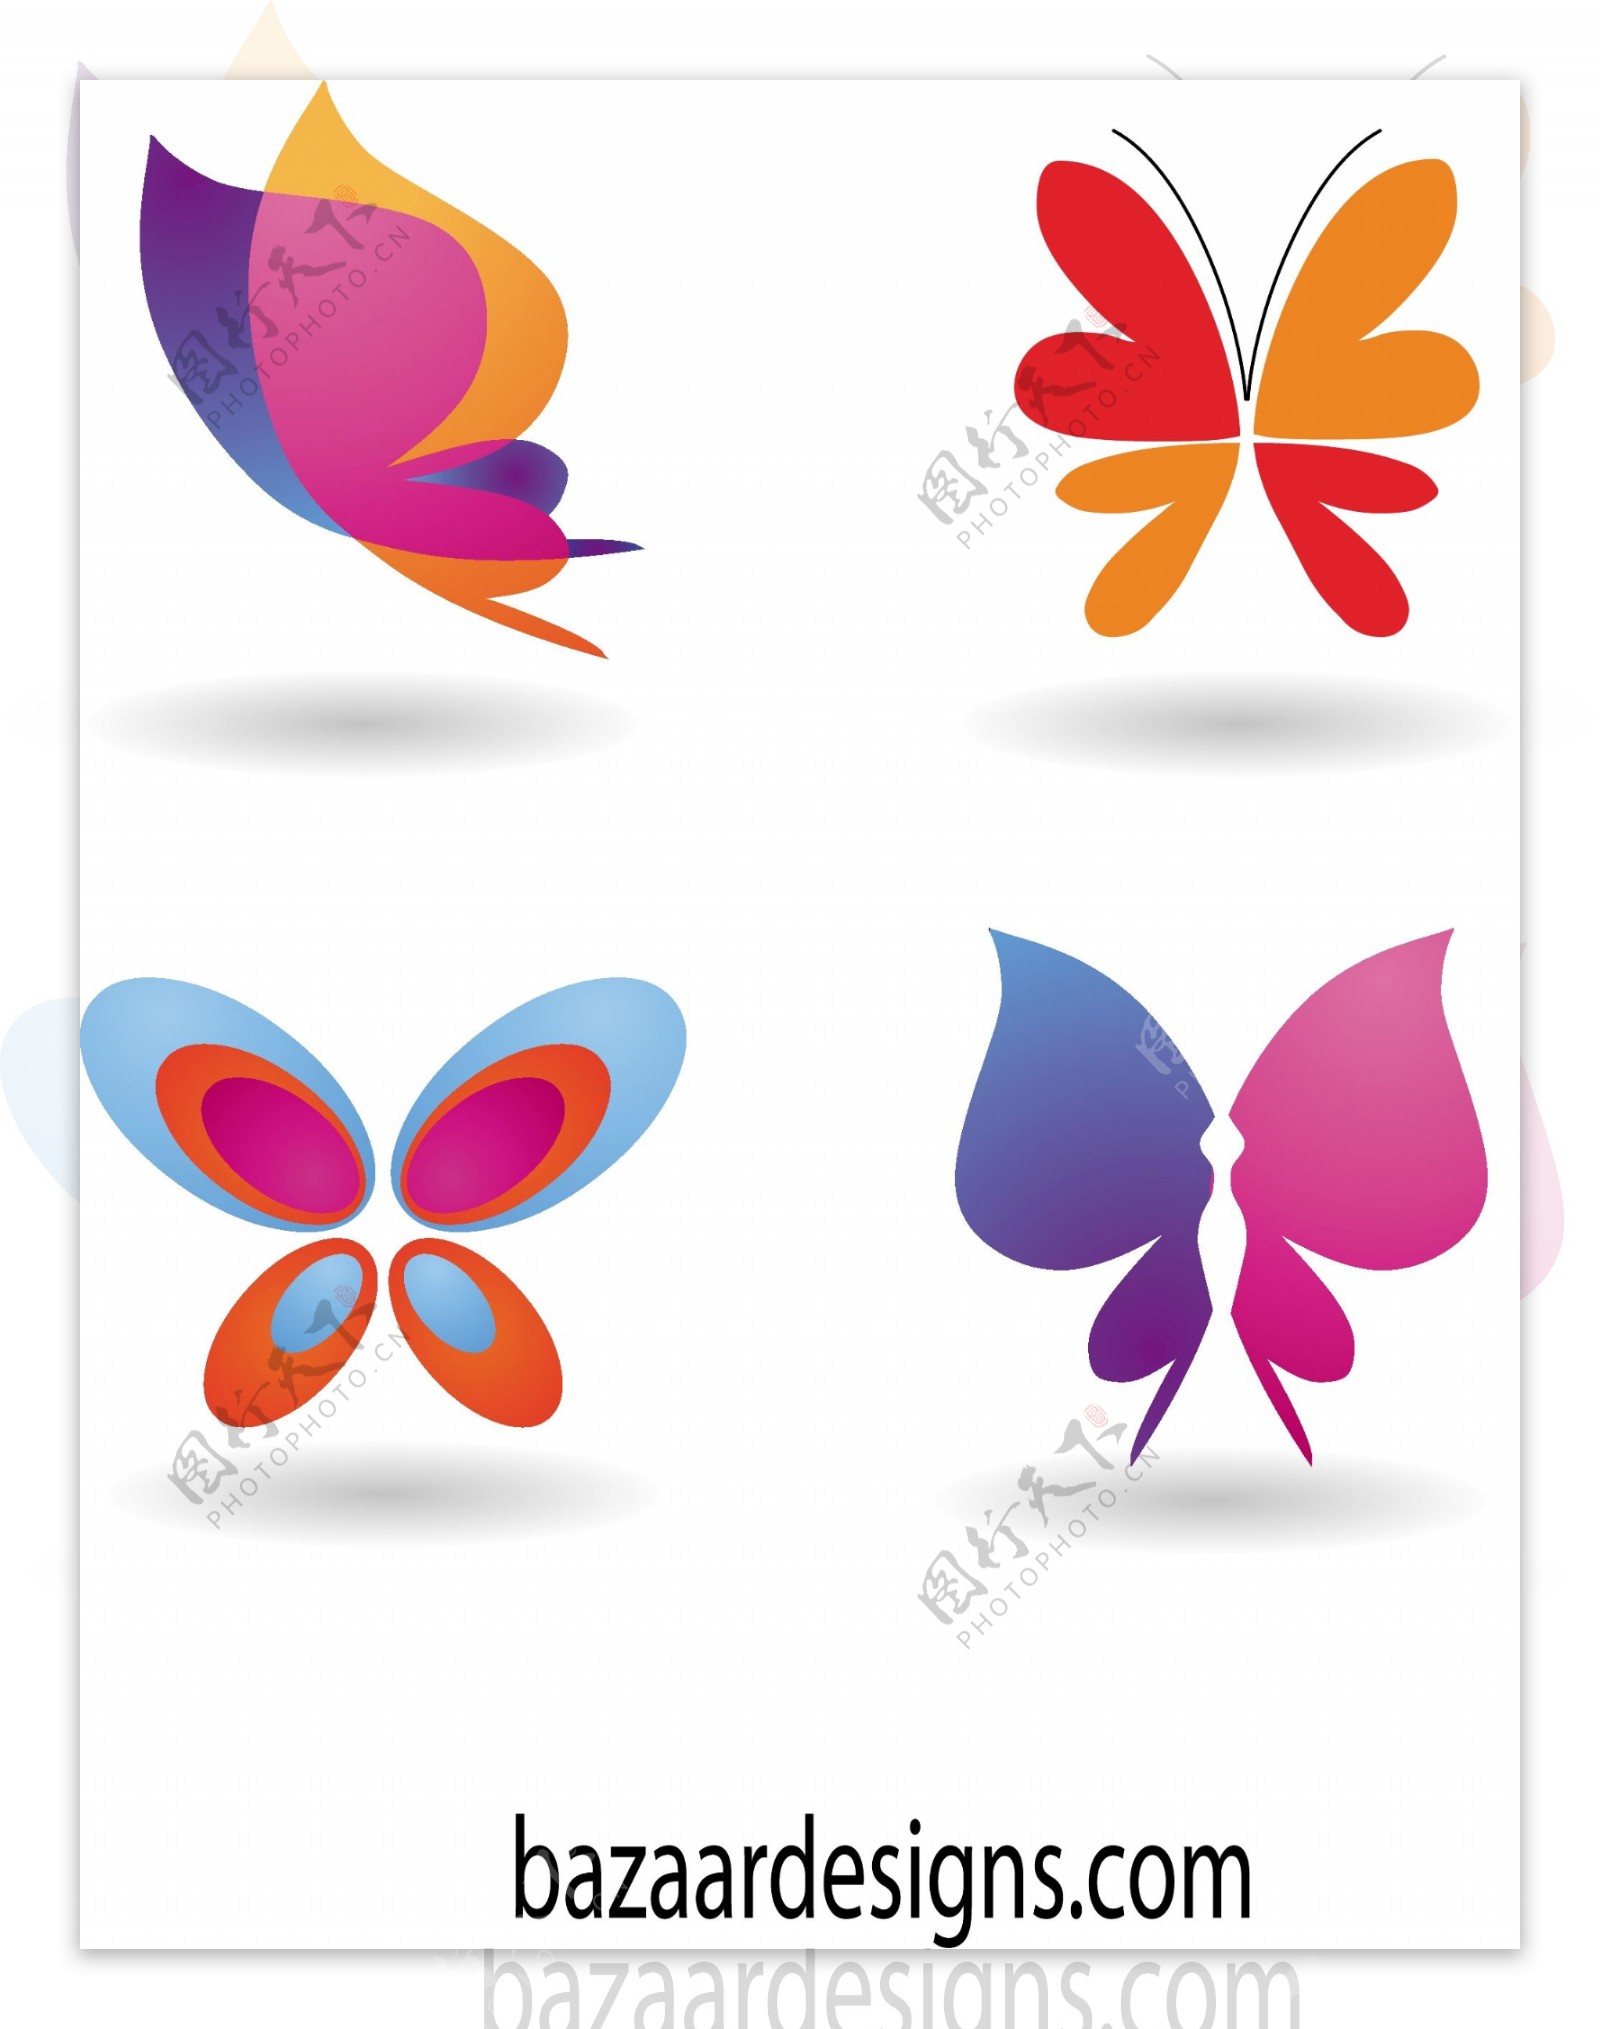 蝴蝶图标和符号集